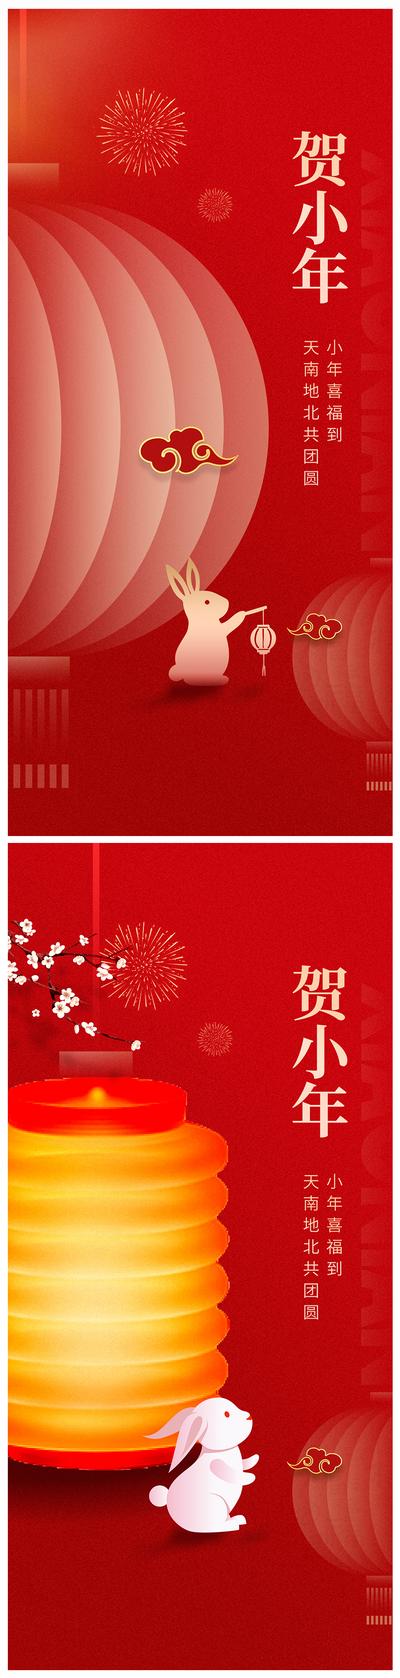 南门网 海报 房地产 中国传统节日 小年 新年 新春  灯笼 兔子 简约  